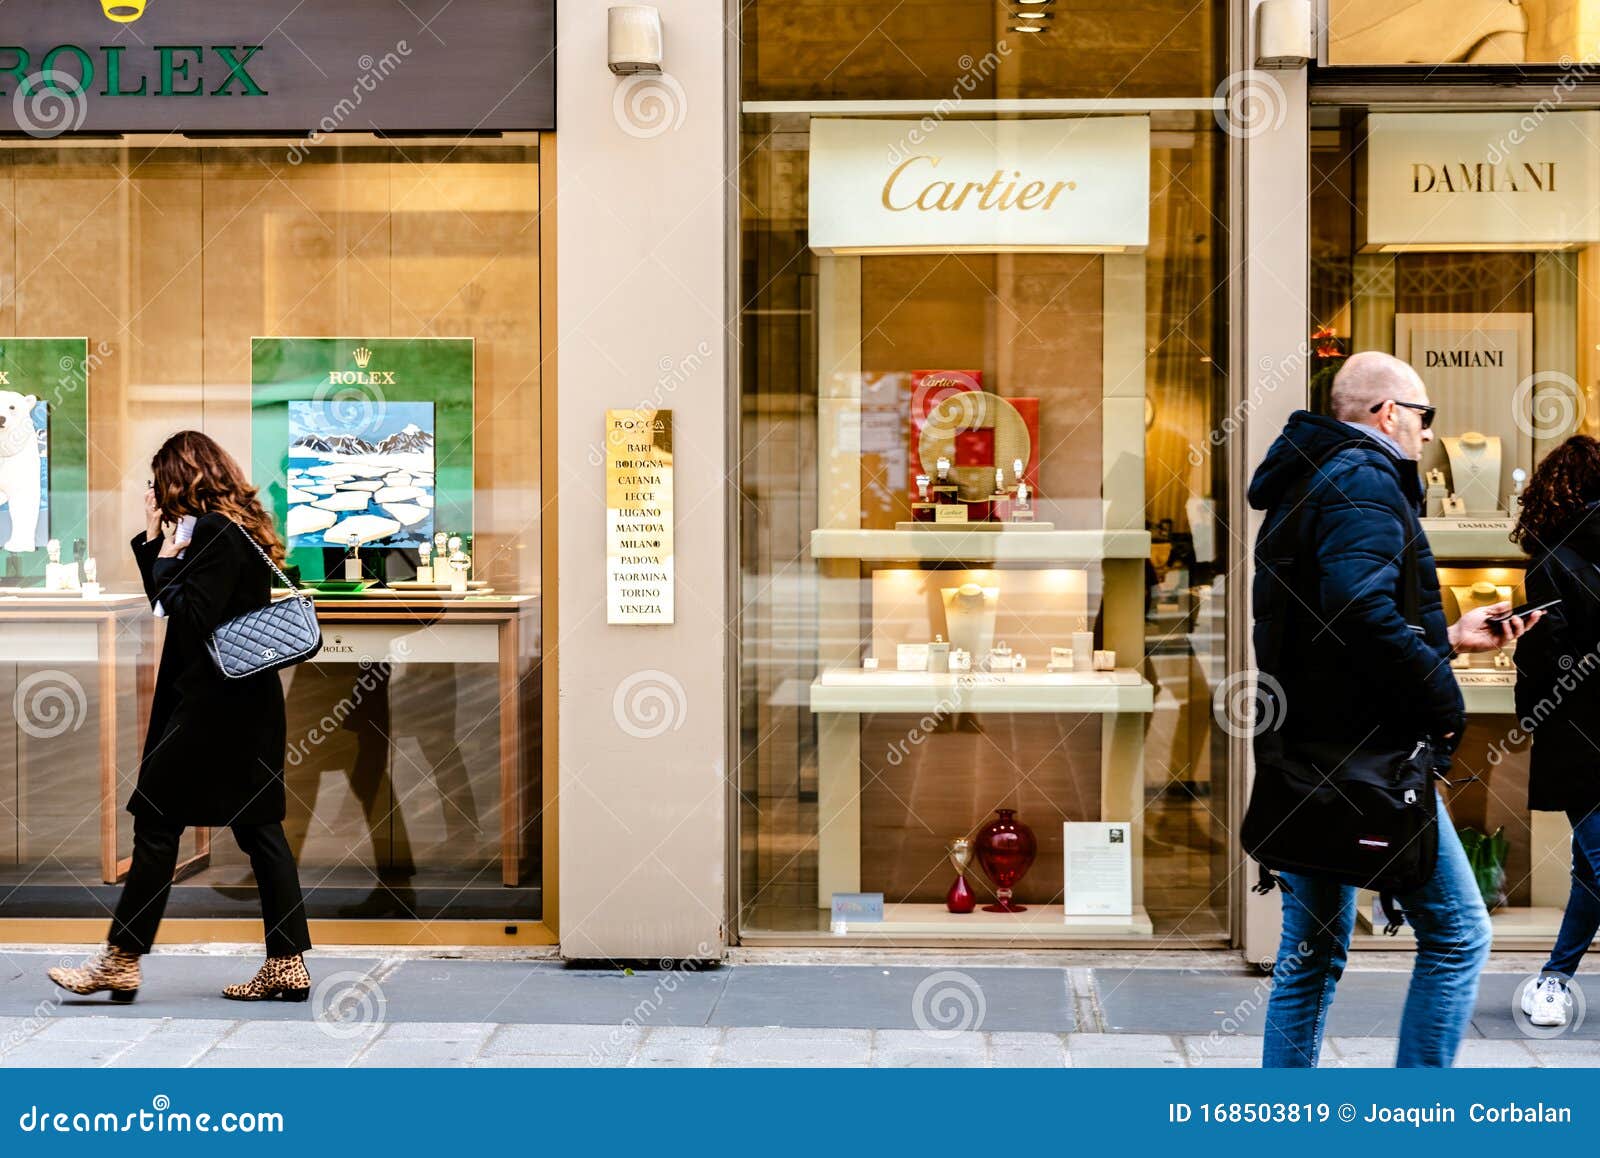 cartier boutique venezia